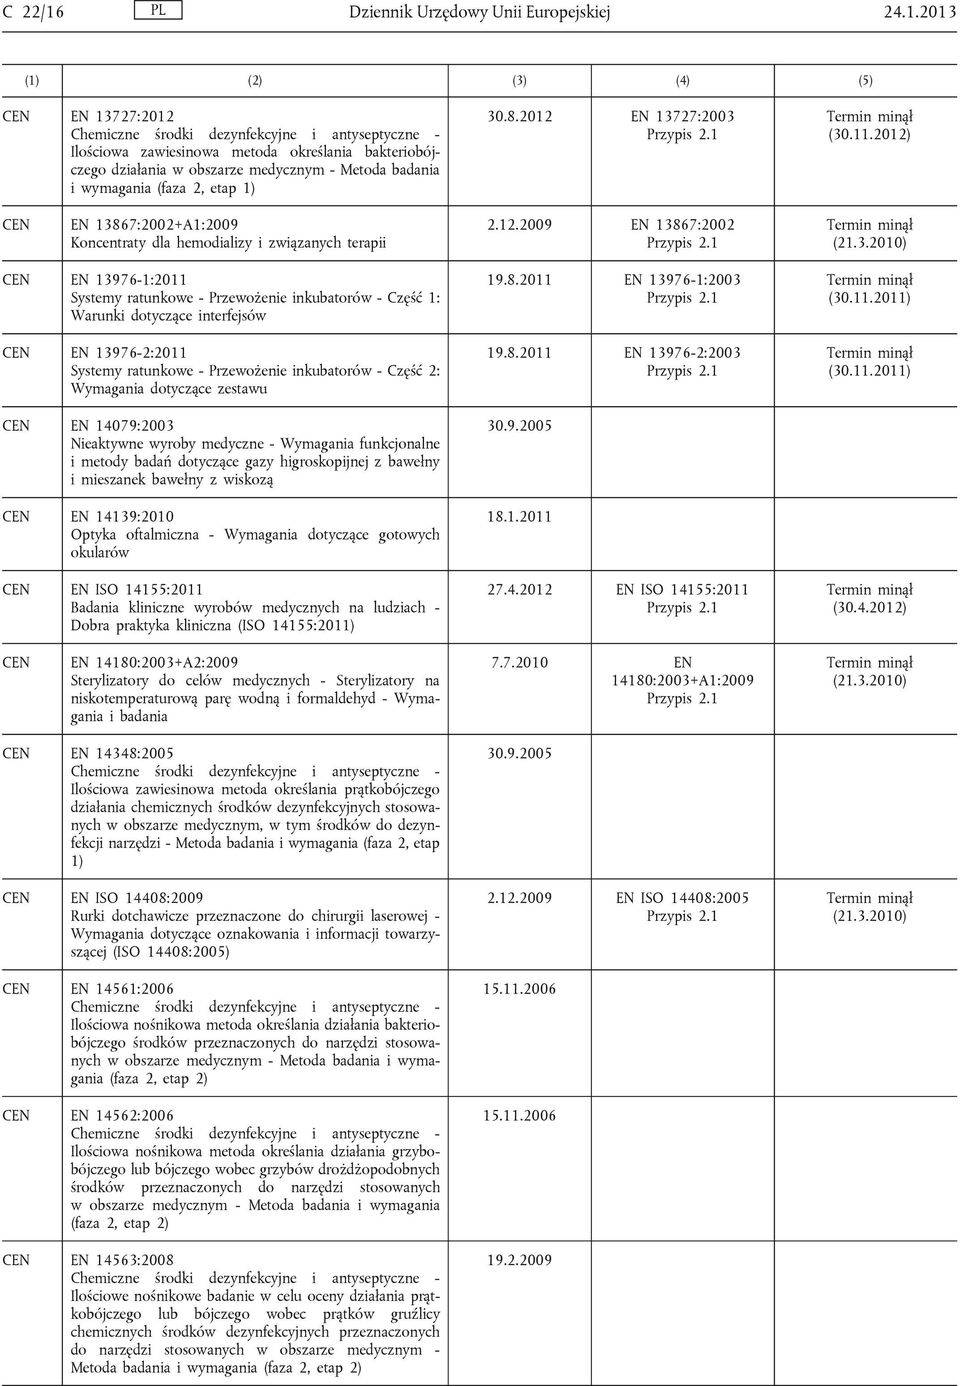 2013 EN 13727:2012 Chemiczne środki dezynfekcyjne i antyseptyczne - Ilościowa zawiesinowa metoda określania bakteriobójczego działania w obszarze medycznym - Metoda badania i wymagania (faza 2, etap